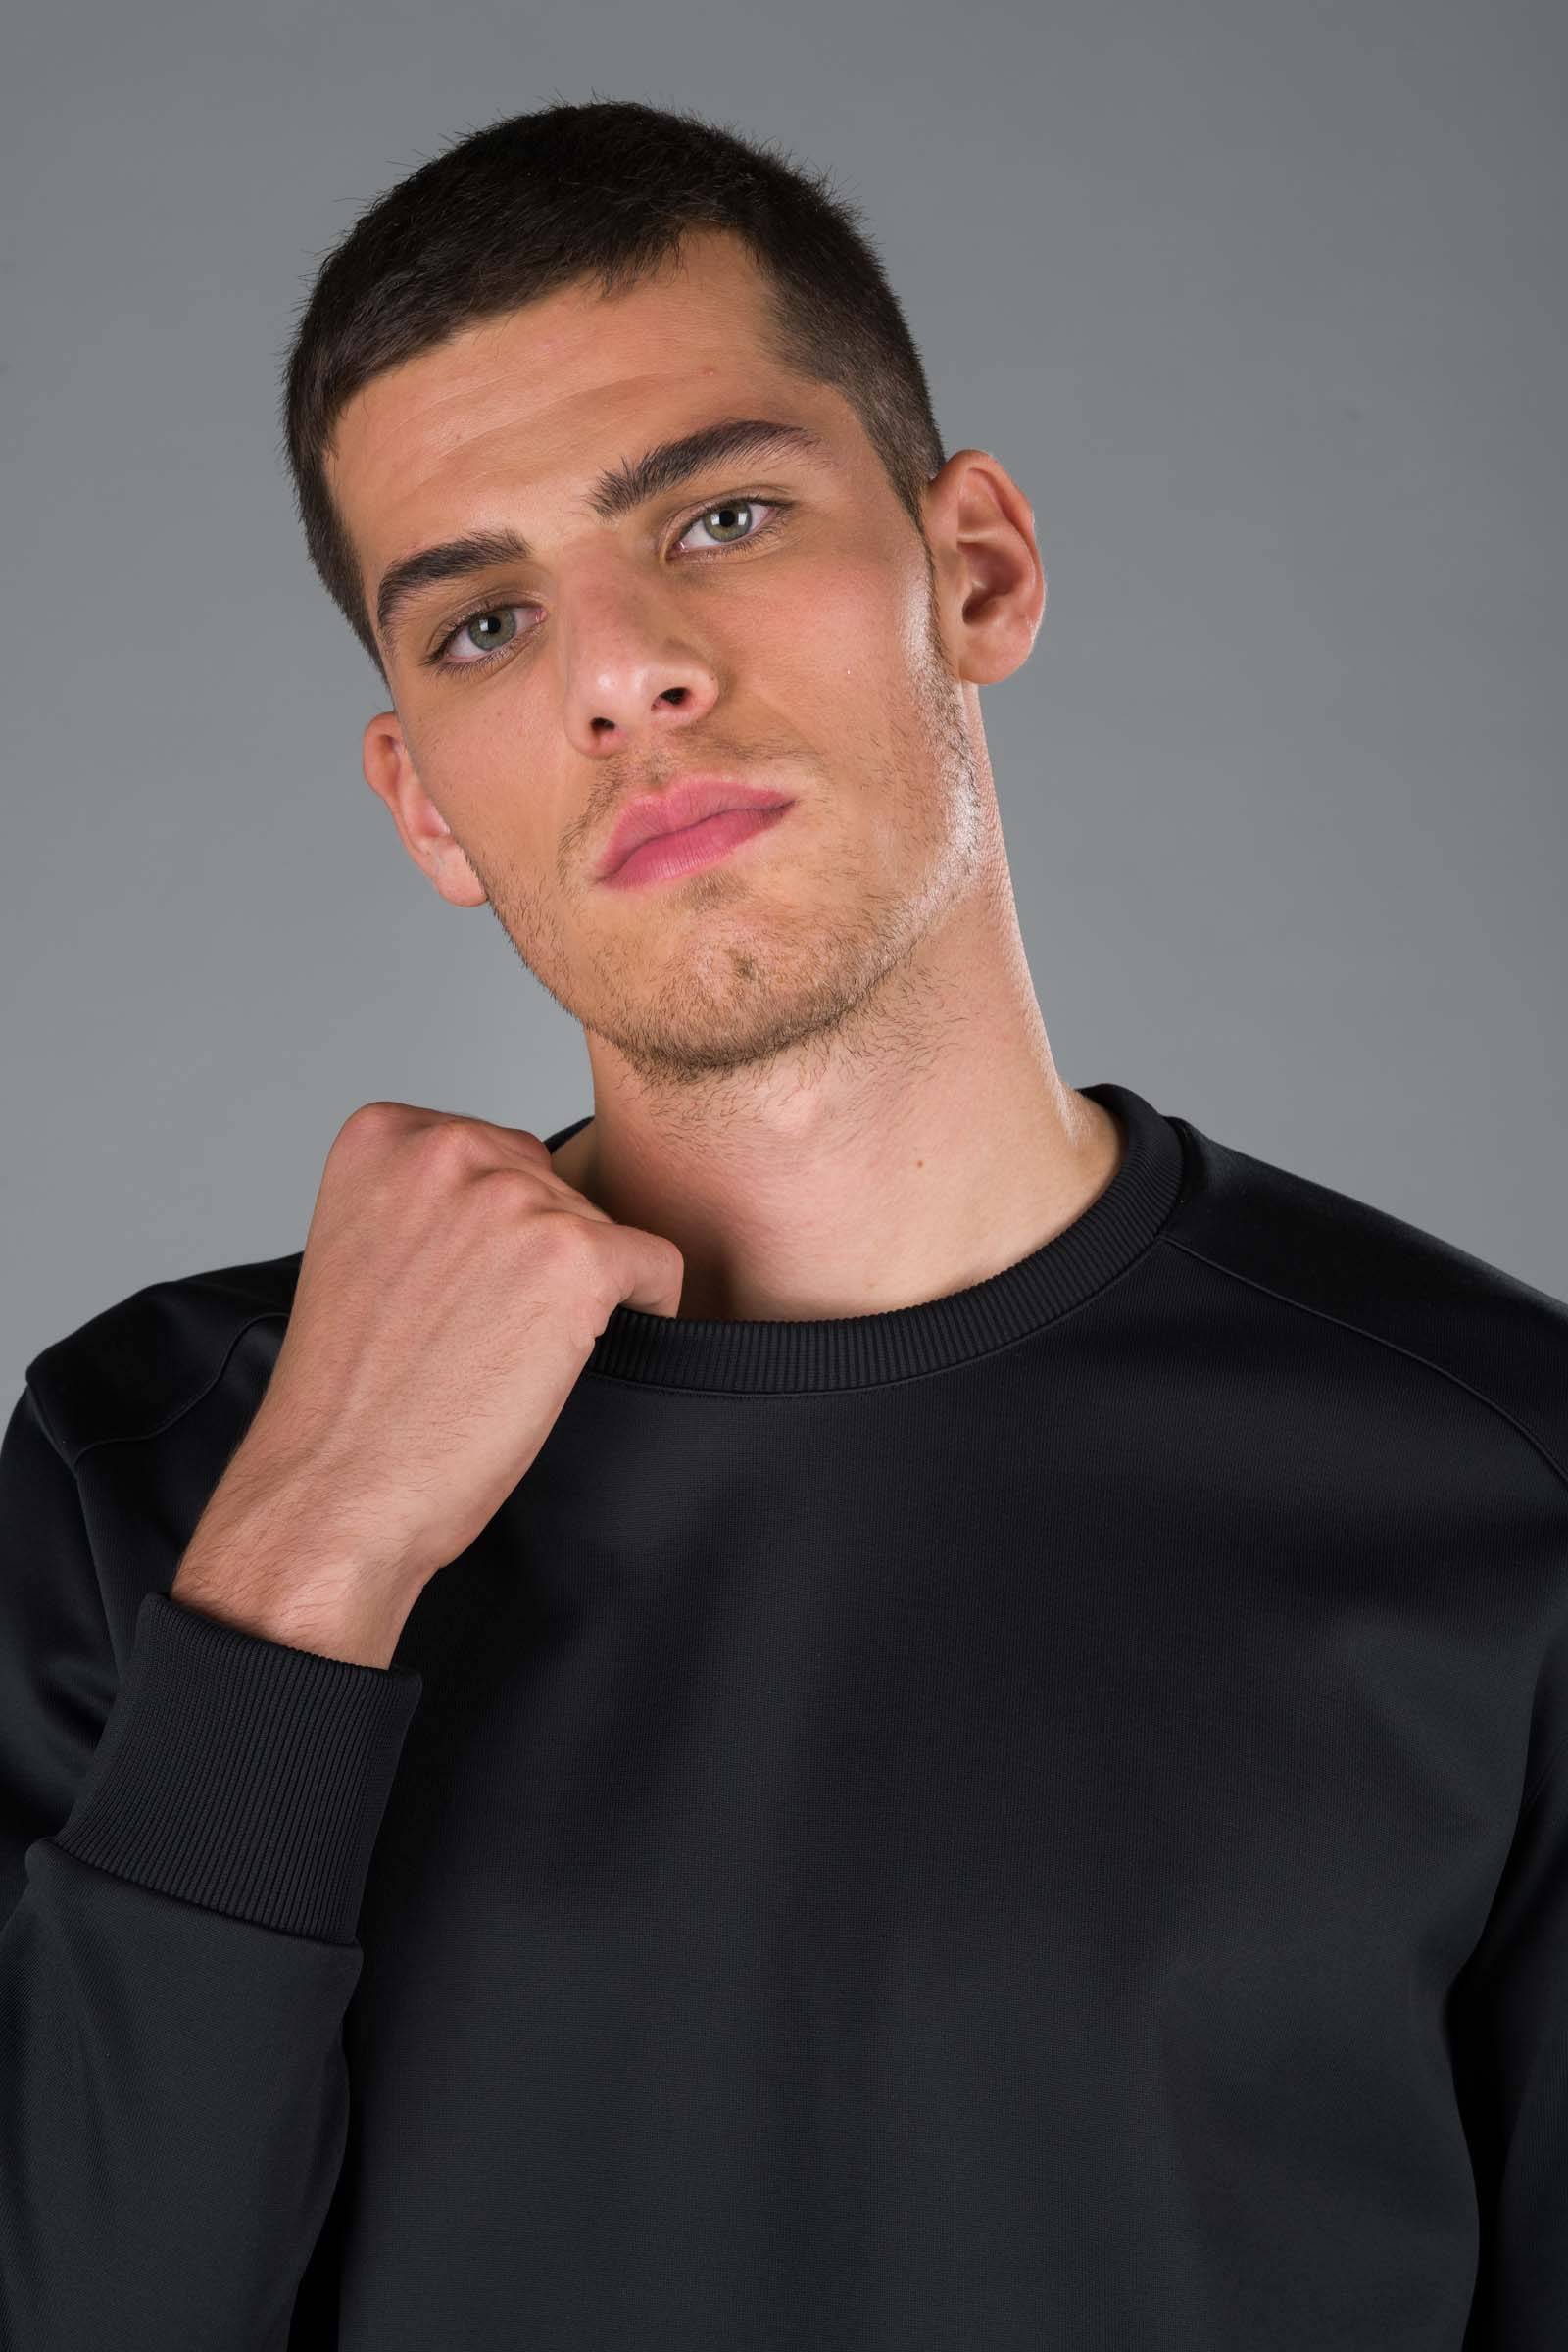 FELPA GIROCOLLO - BLACK - Abbigliamento sportivo | Hydrogen